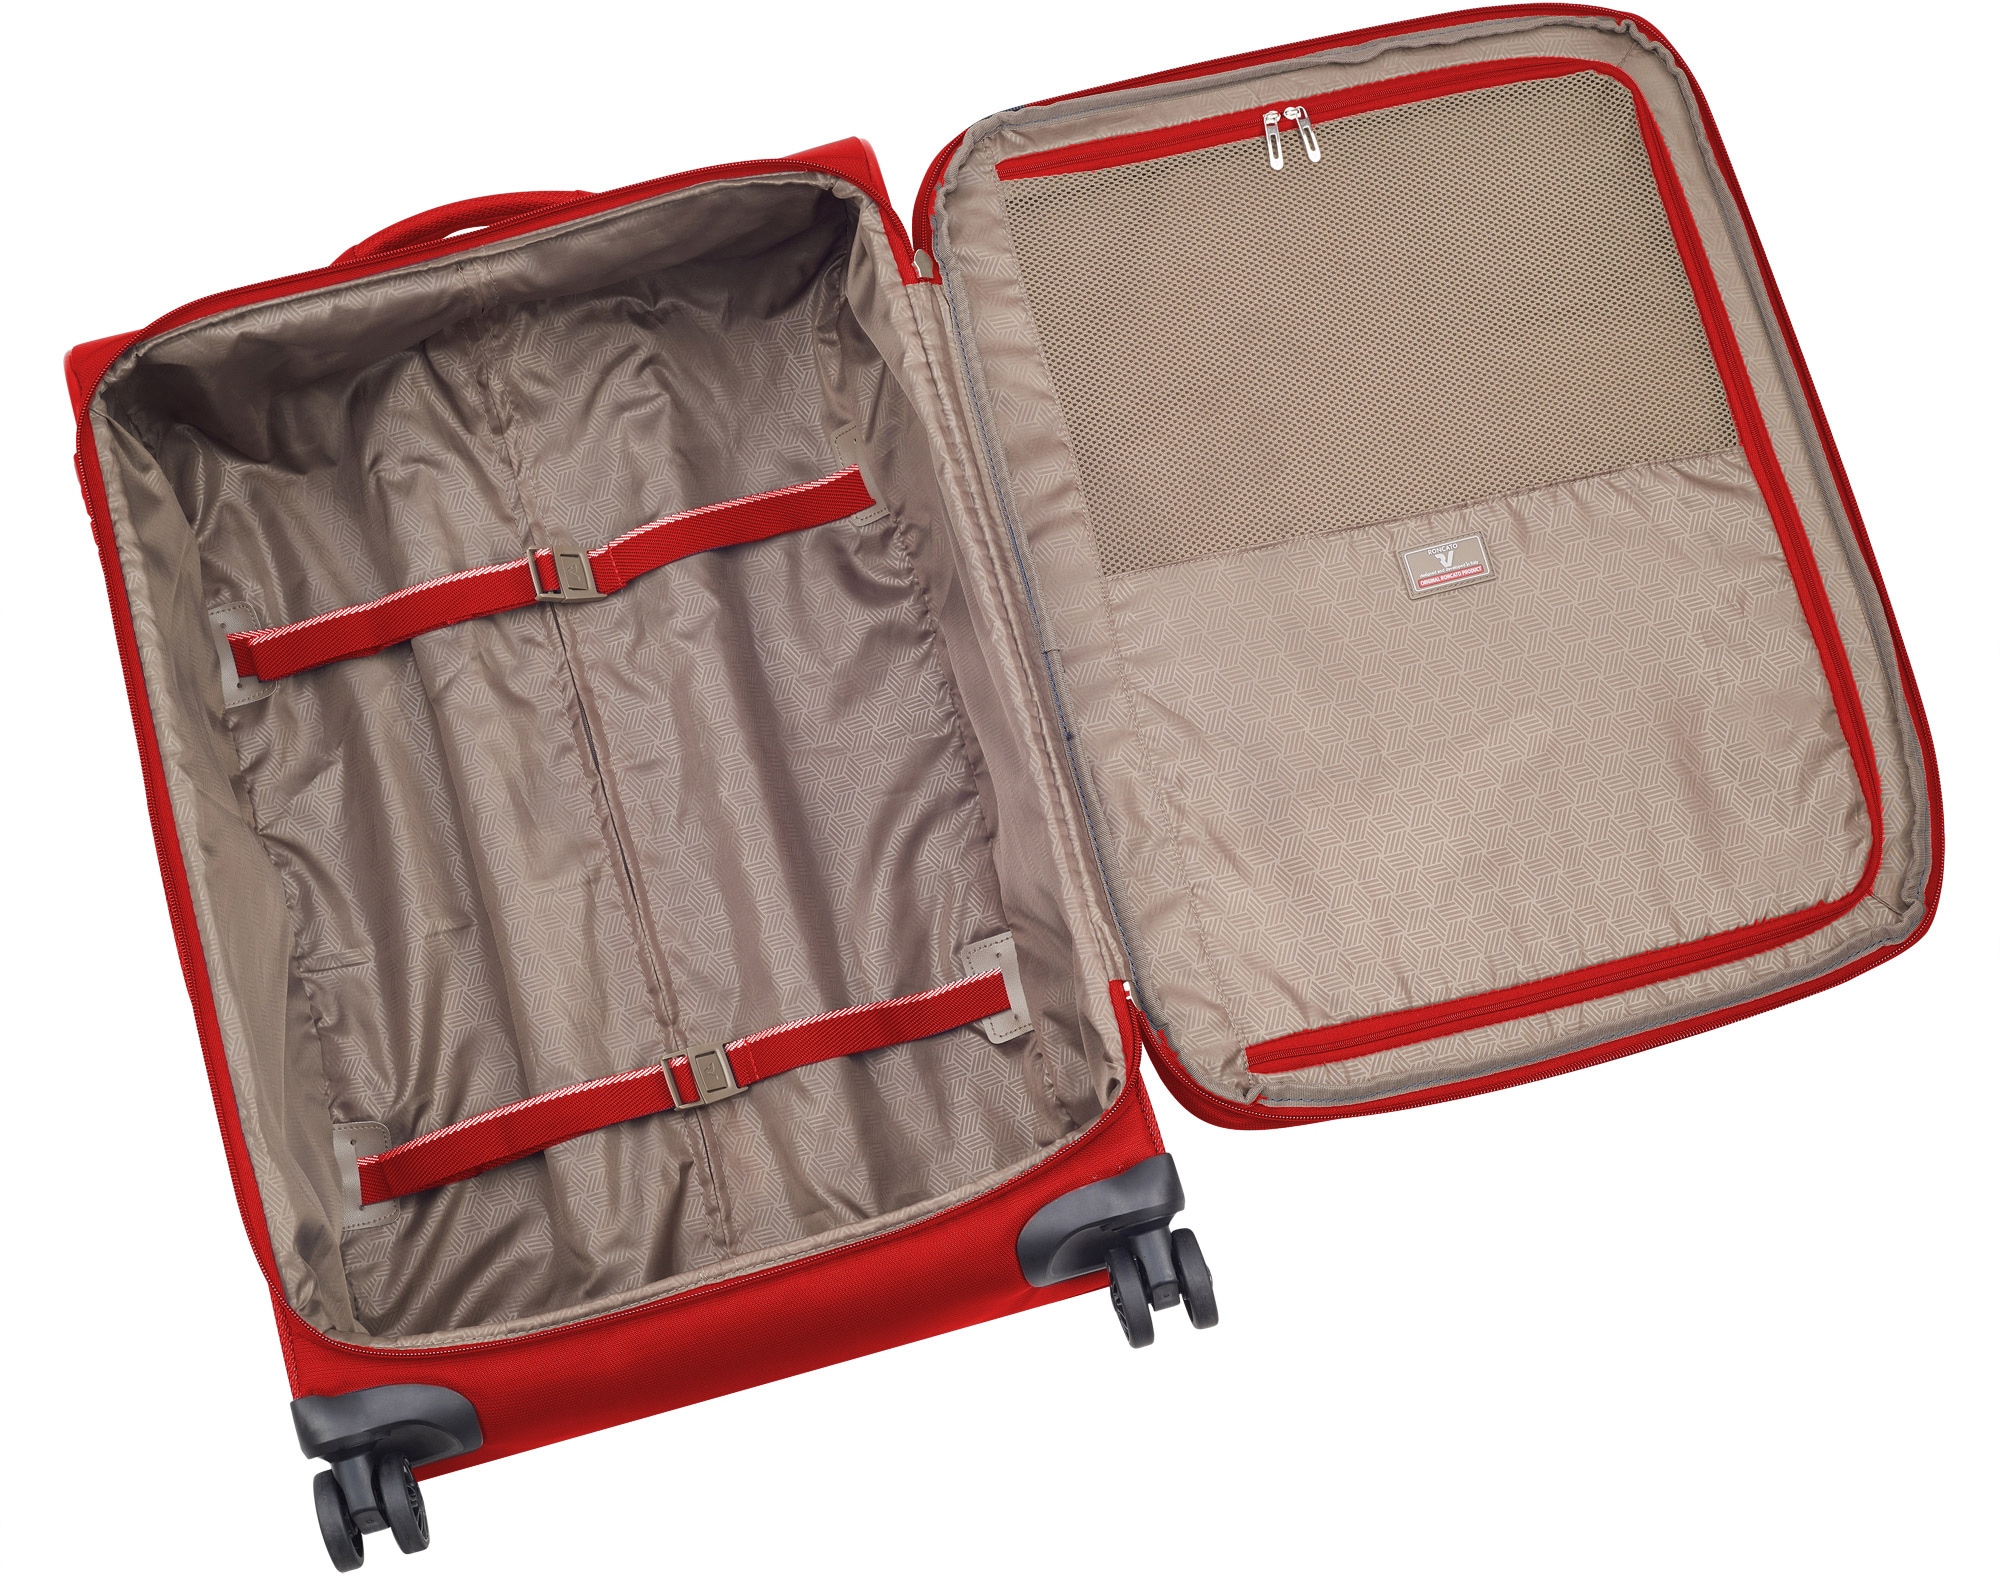 RONCATO Weichgepäck-Trolley »Joy, 75 cm«, 4 Rollen, Reisegepäck Koffer mittel groß mit Volumenerweiterung und TSA Schloss